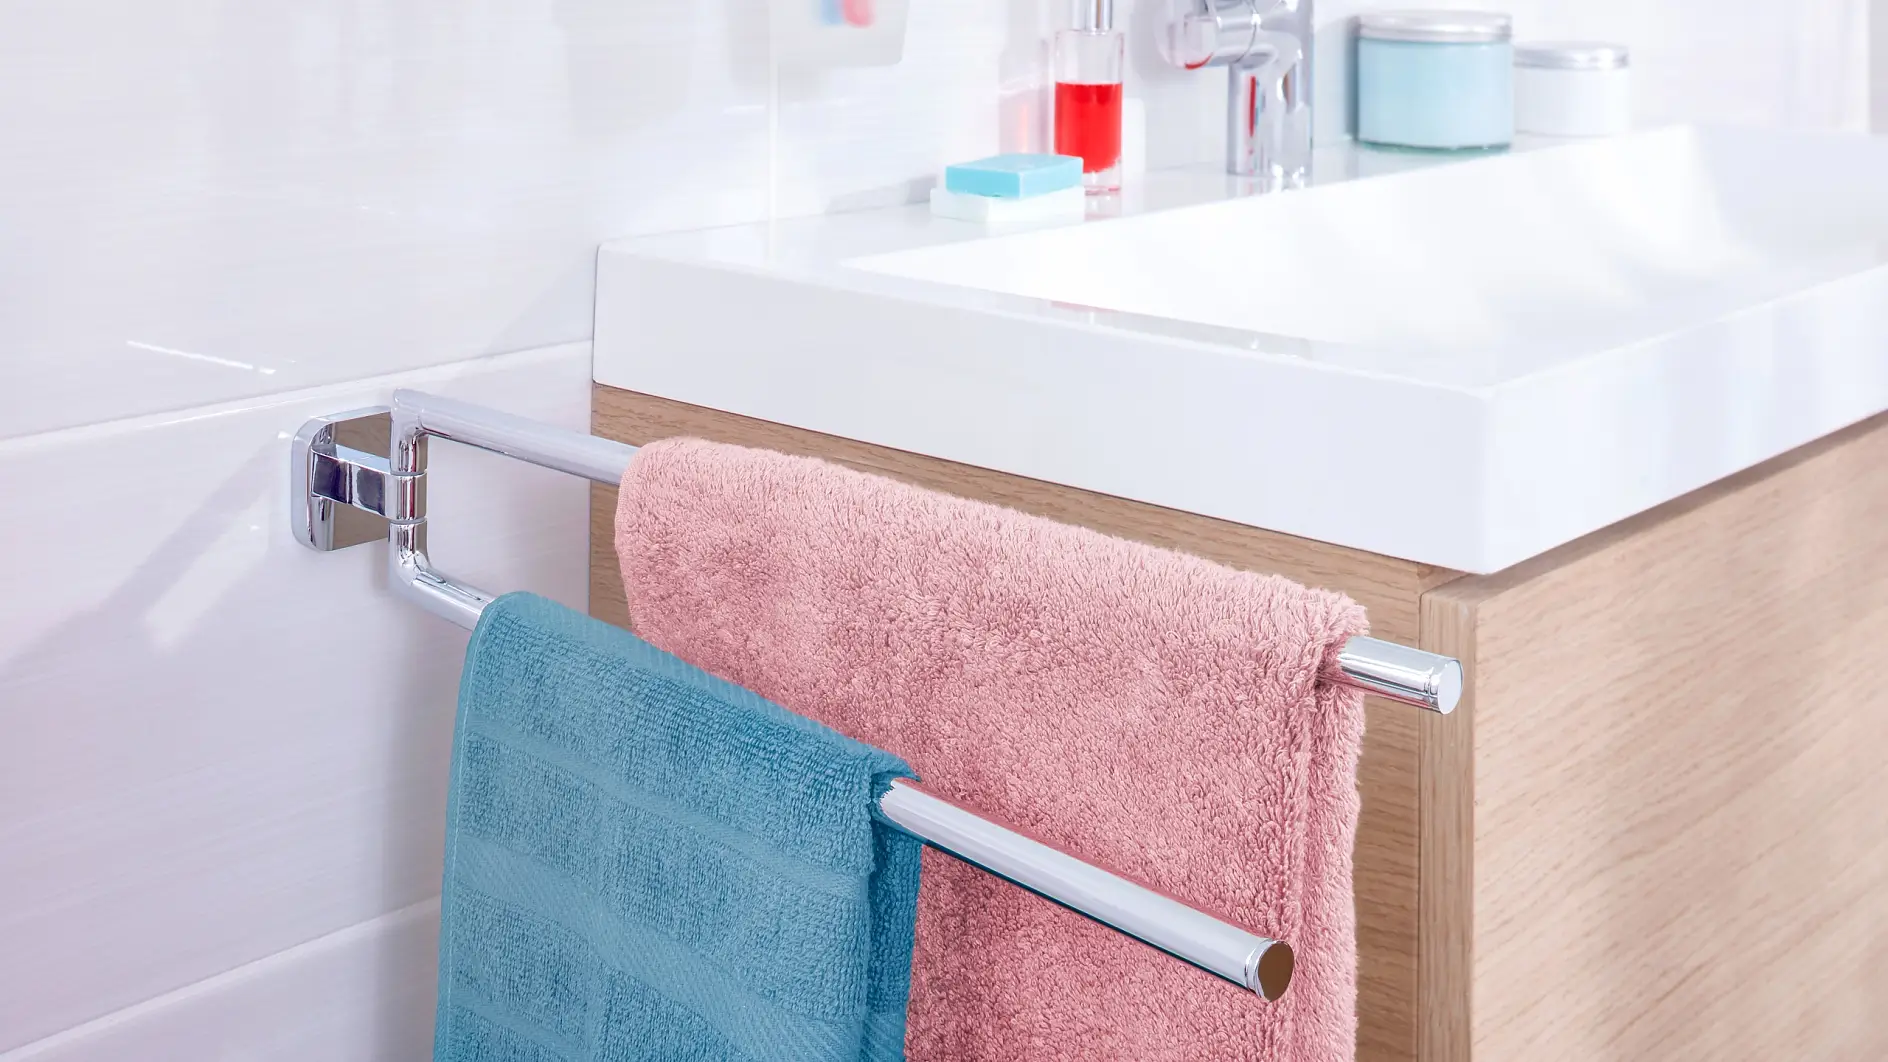 Gardez vos serviettes de toilette là où vous en avez besoin et offrez-leur un espace pour sécher après utilisation.